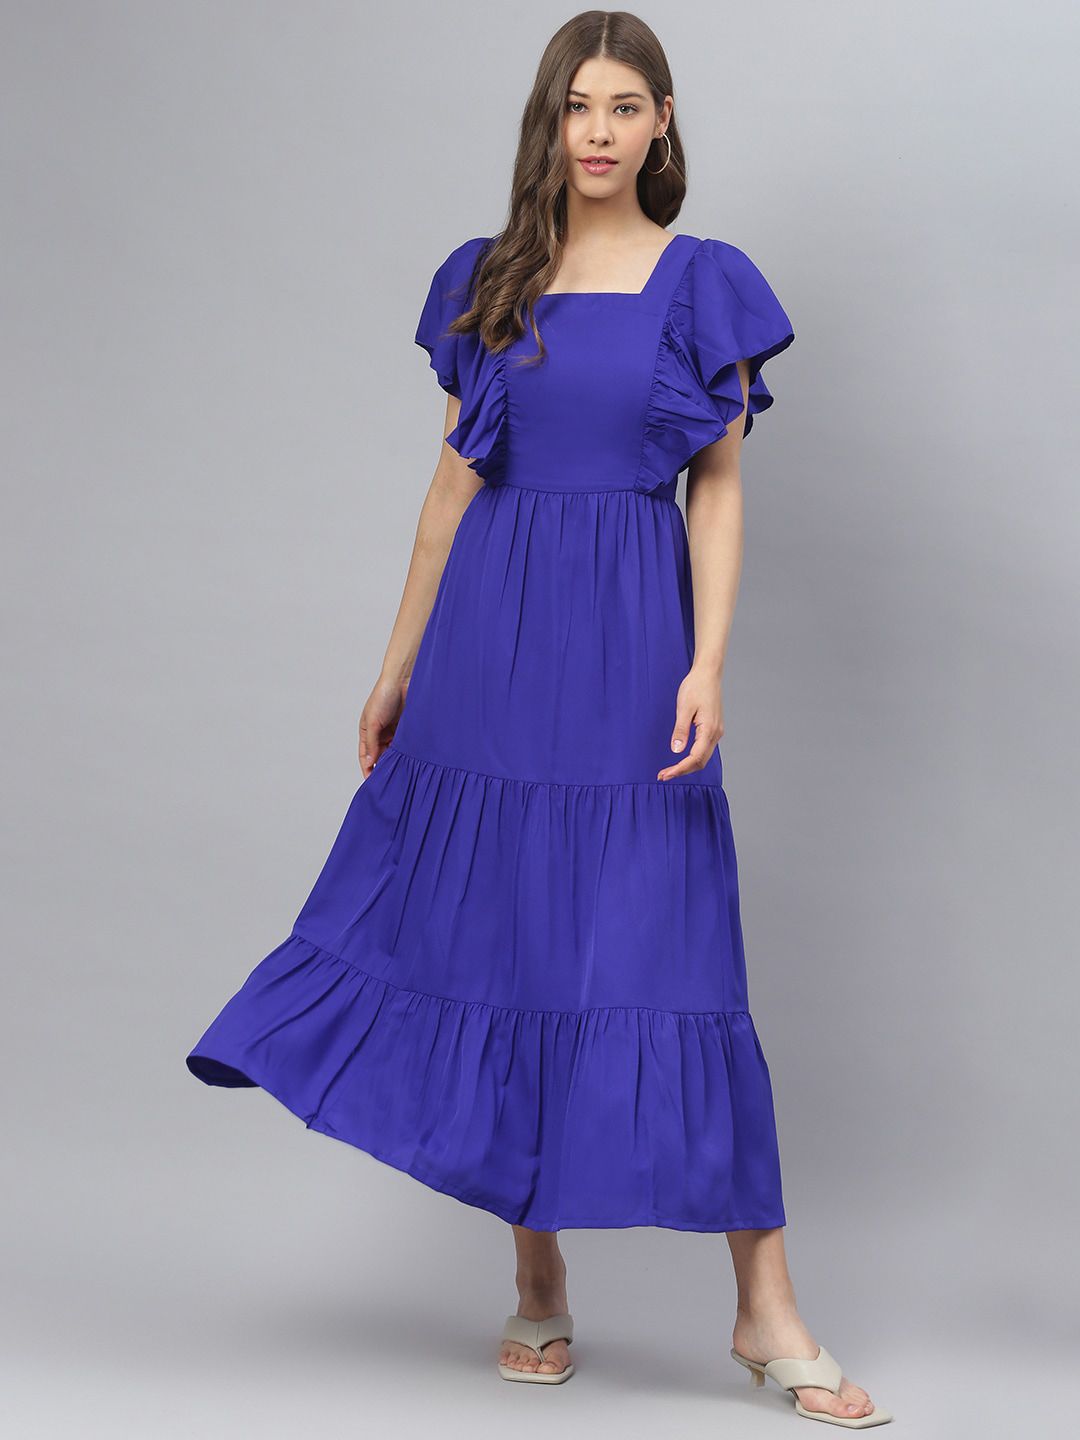 DEEBACO Blue Maxi Dress Price in India